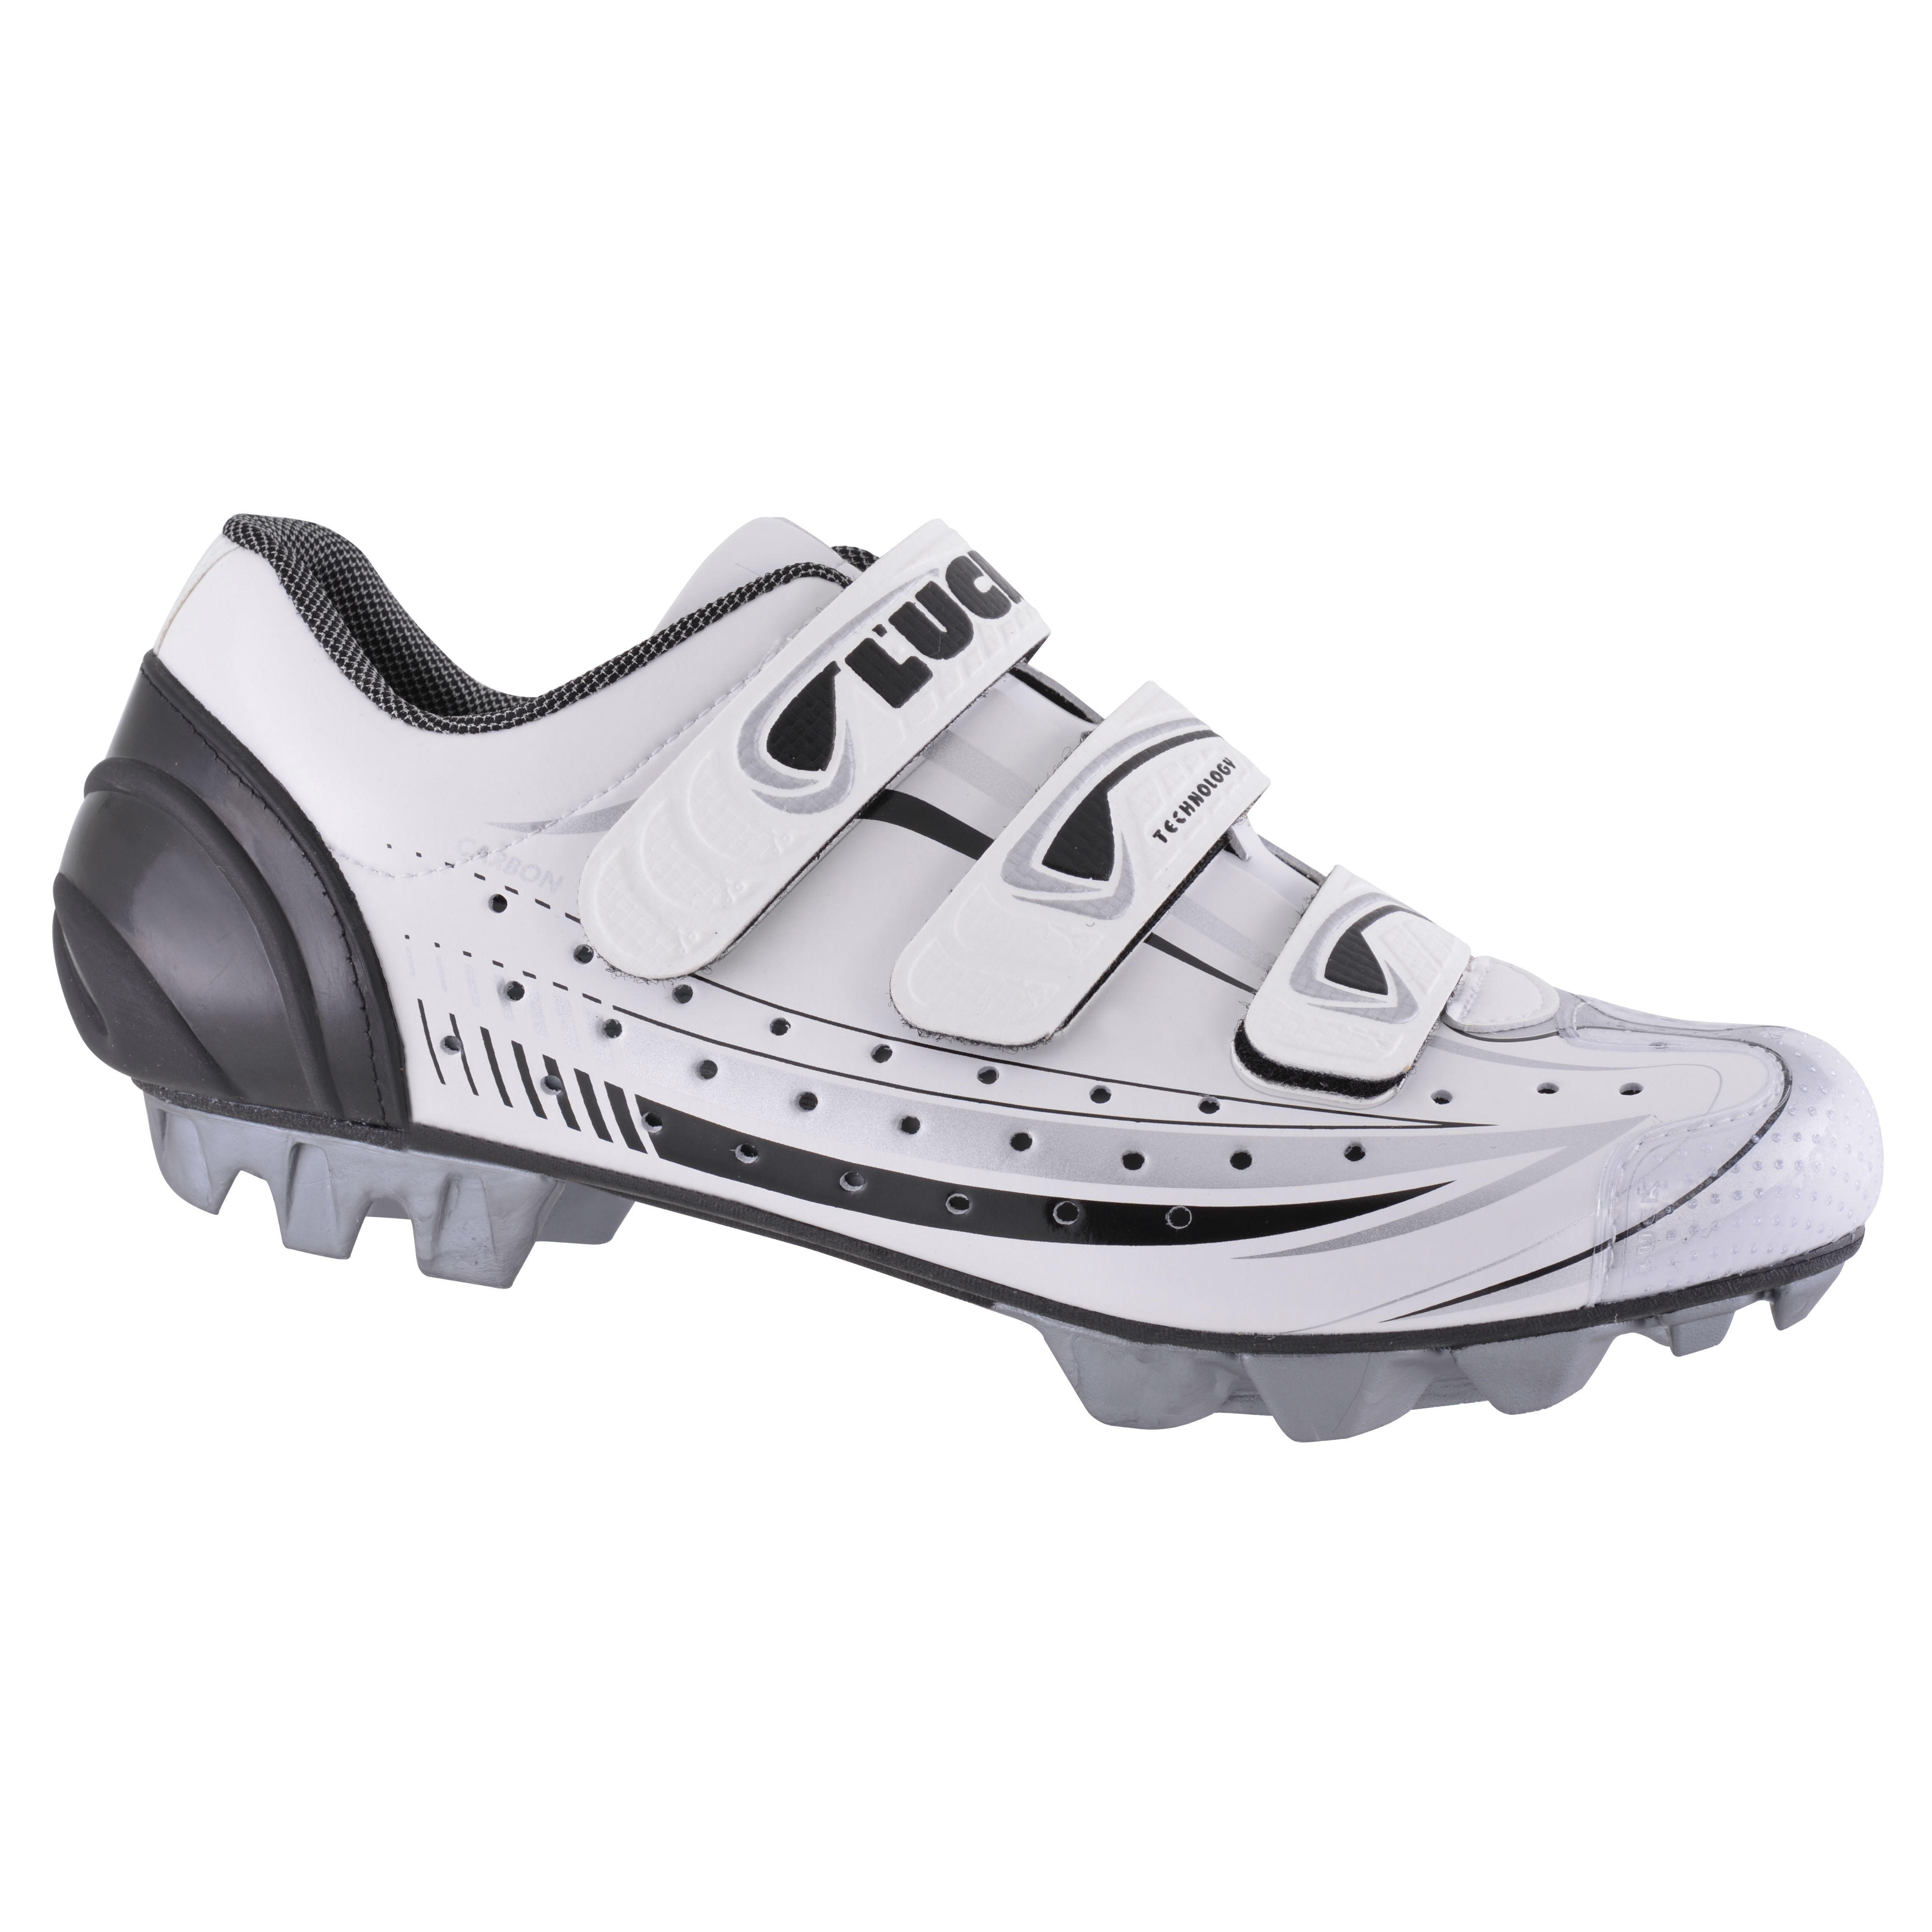 Zapatillas Bici Montaña Flash Sales - deportesinc.com 1688013680